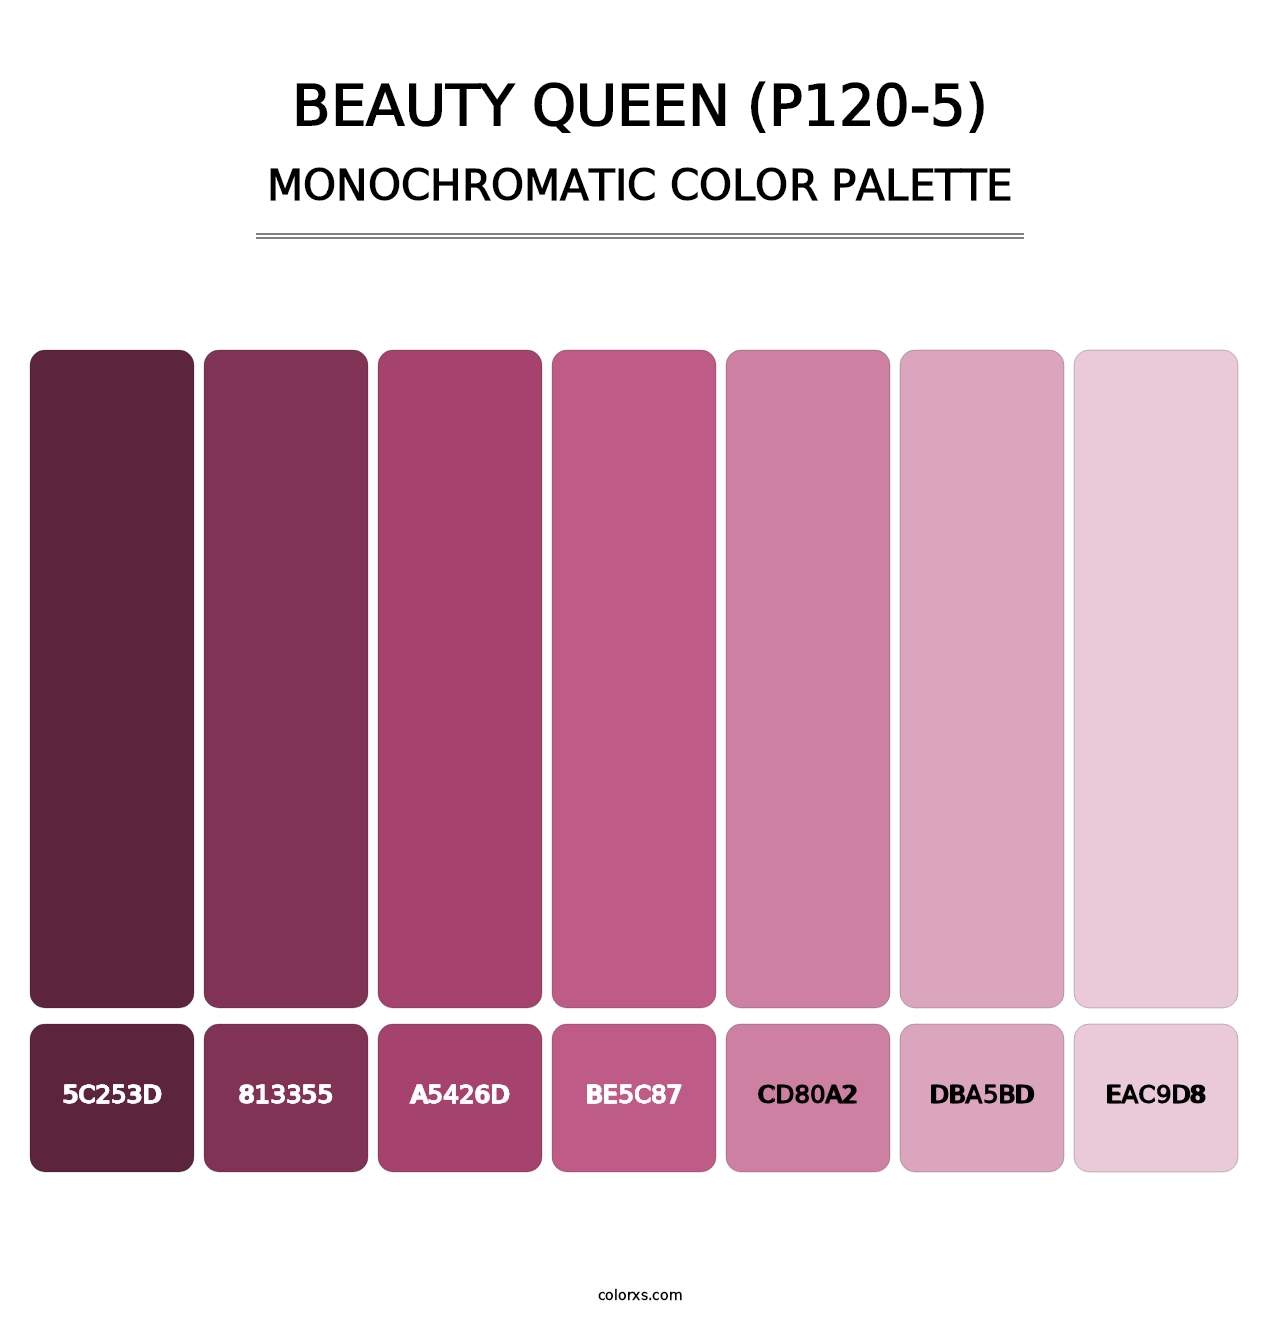 Beauty Queen (P120-5) - Monochromatic Color Palette